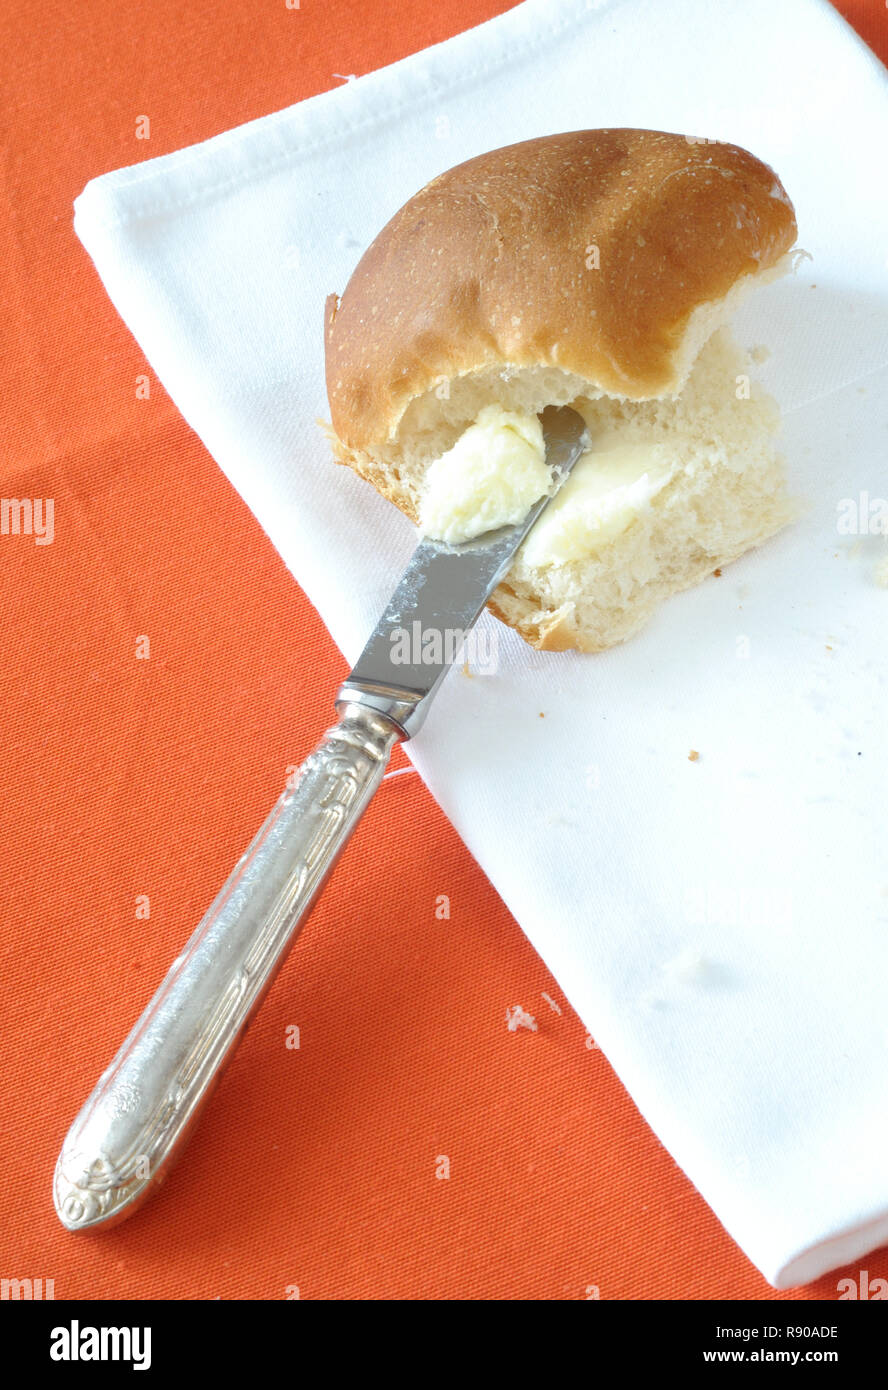 Vista superiore del burro spalmato su un panino, su sfondo arancione, verticale Foto Stock